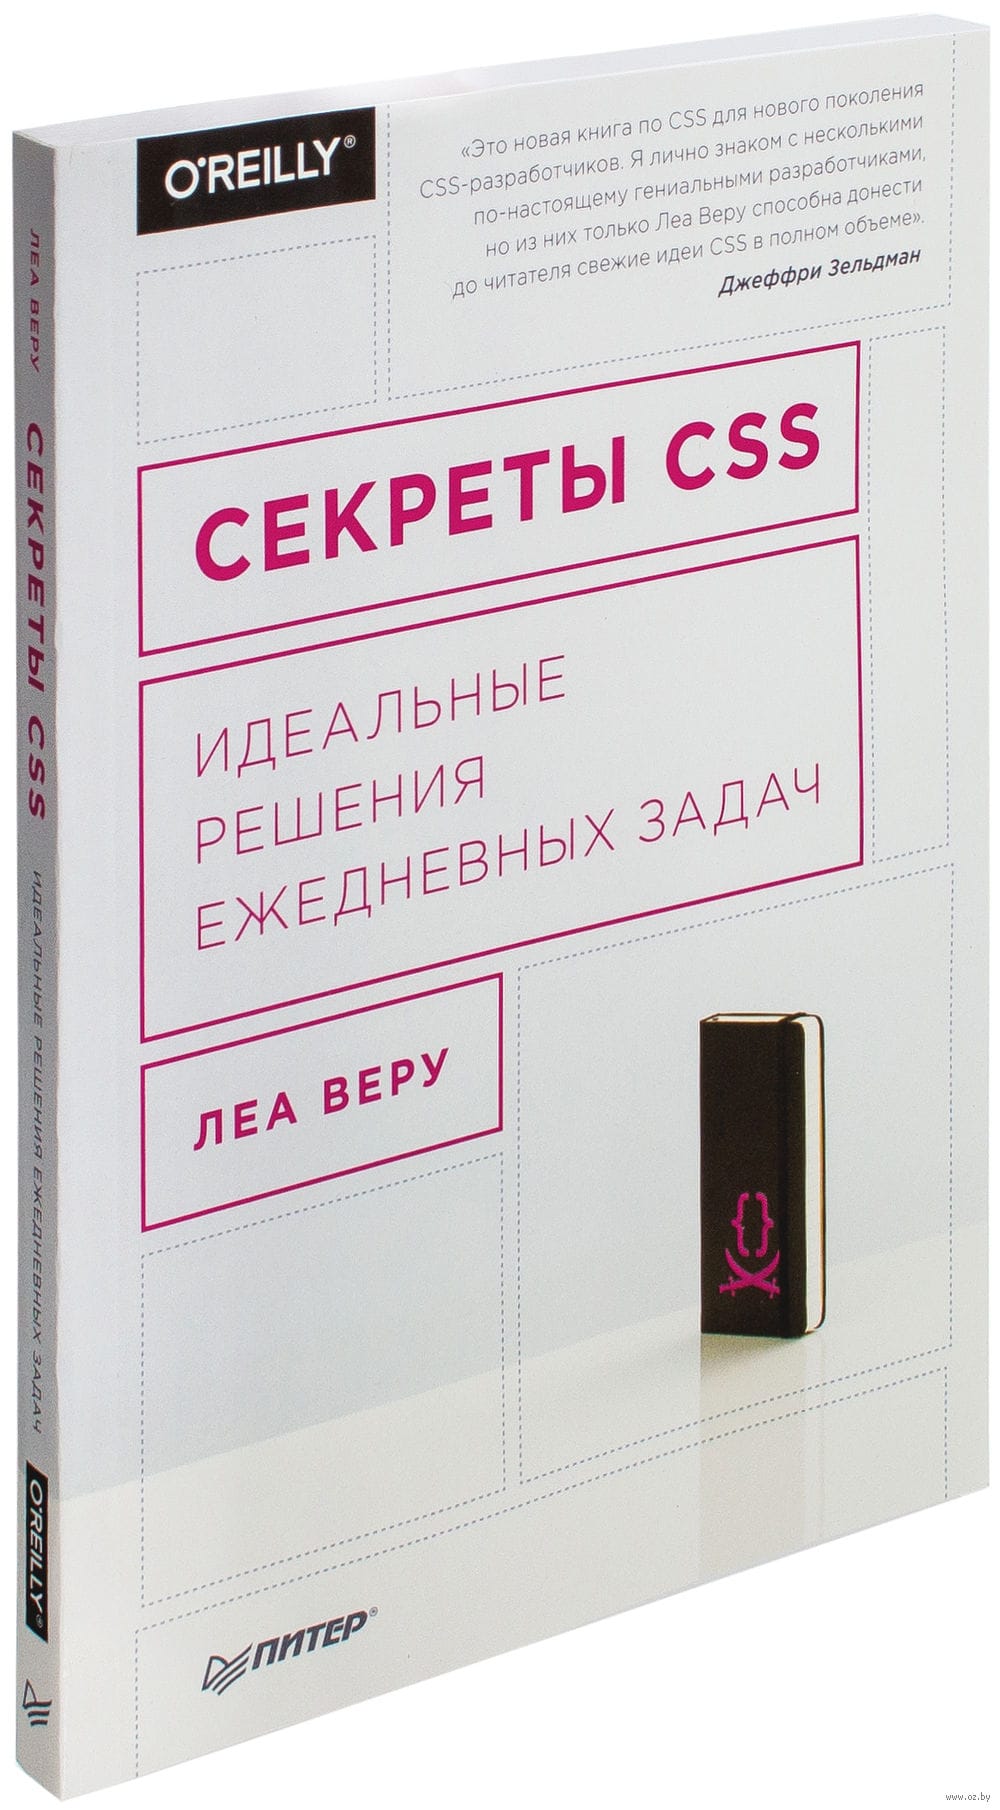 CSS Secrets Book